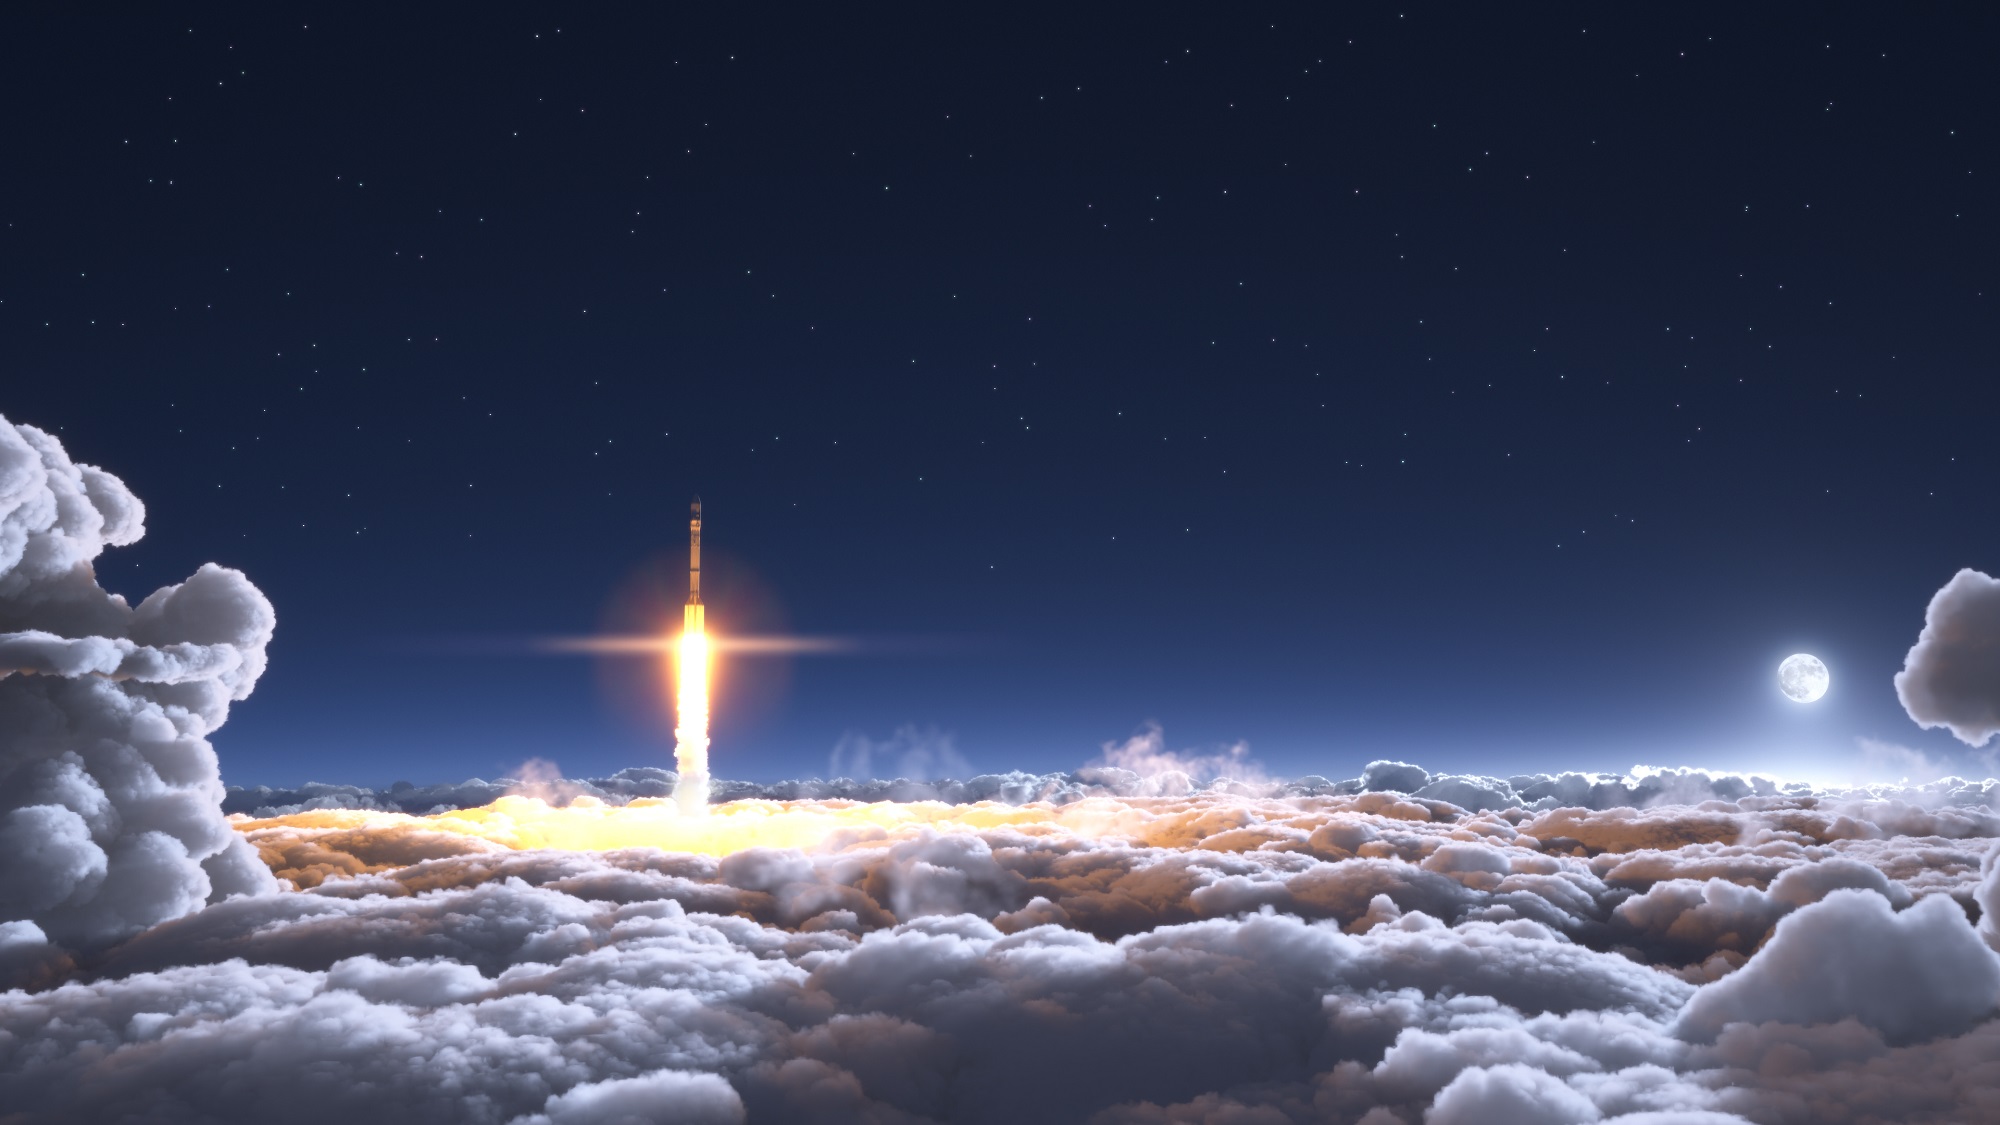 3D-Darstellung einer Rakete, die bei Mondlicht durch die Wolken fliegt